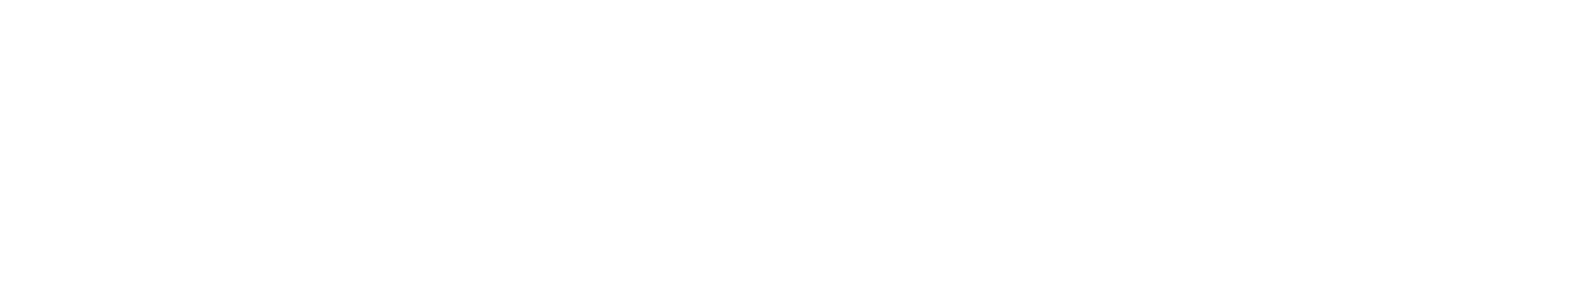 Gambling.com Group logo grand pour les fonds sombres (PNG transparent)